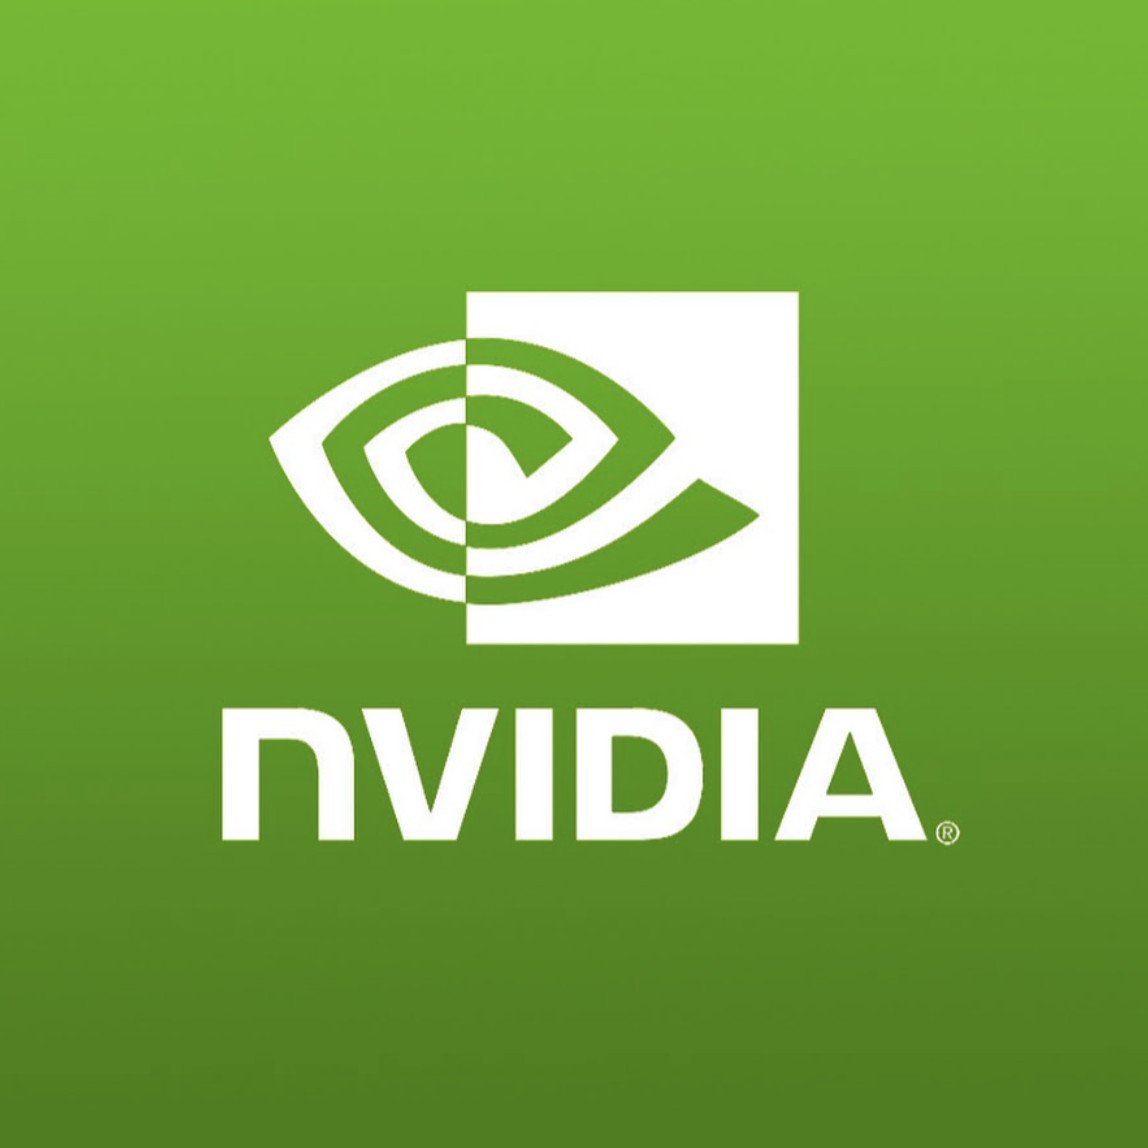 The+Nvidia+Logo.